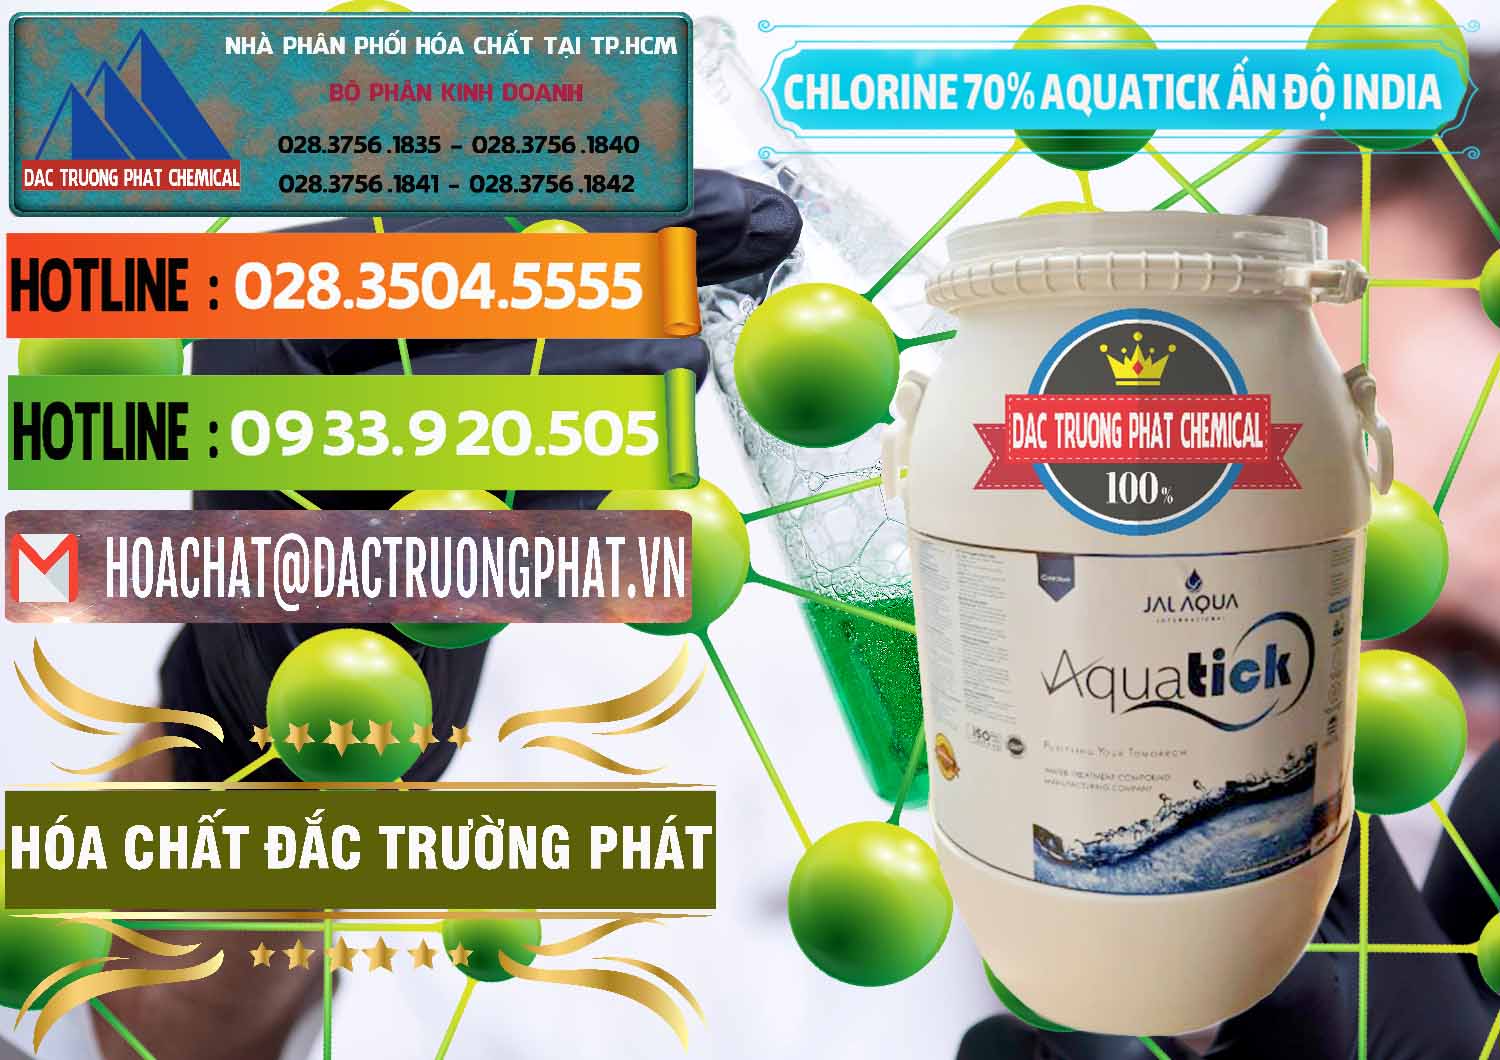 Nơi kinh doanh ( bán ) Chlorine – Clorin 70% Aquatick Jal Aqua Ấn Độ India - 0215 - Cty cung cấp _ kinh doanh hóa chất tại TP.HCM - cungcaphoachat.com.vn